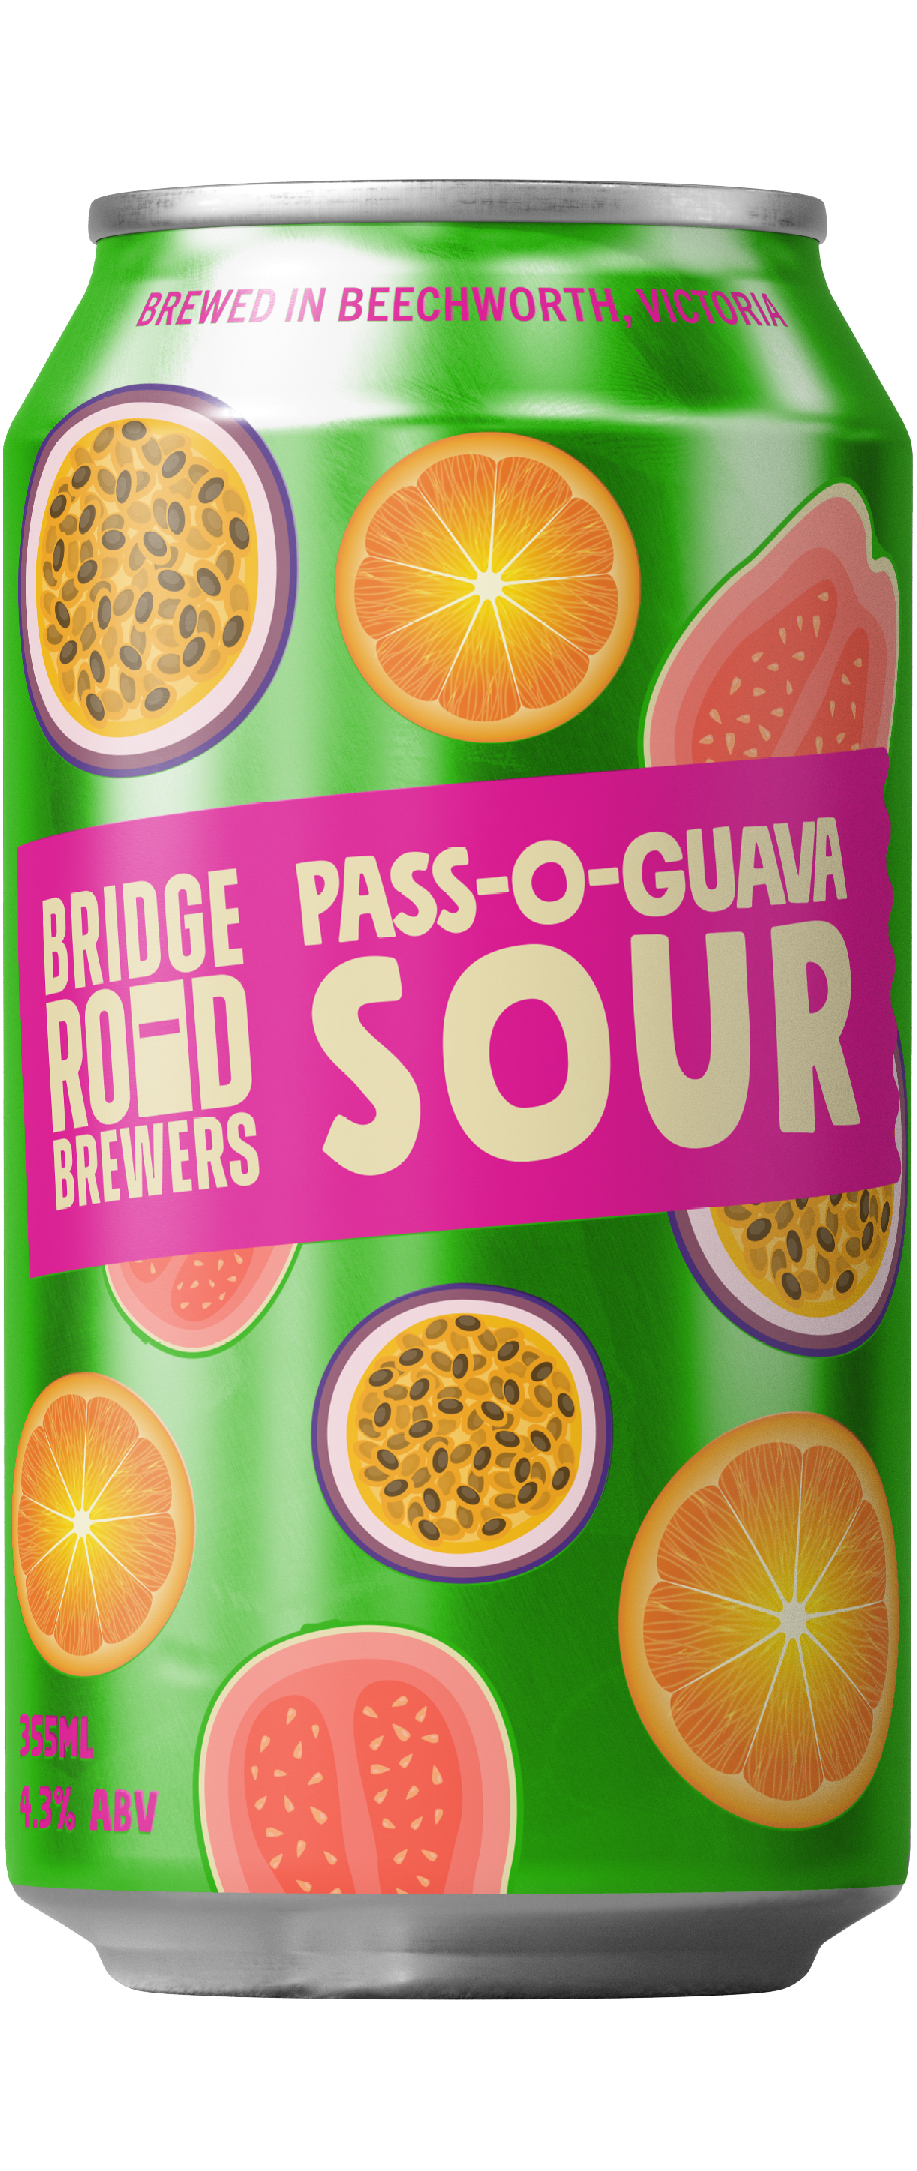 Pass-O-Guava Sour